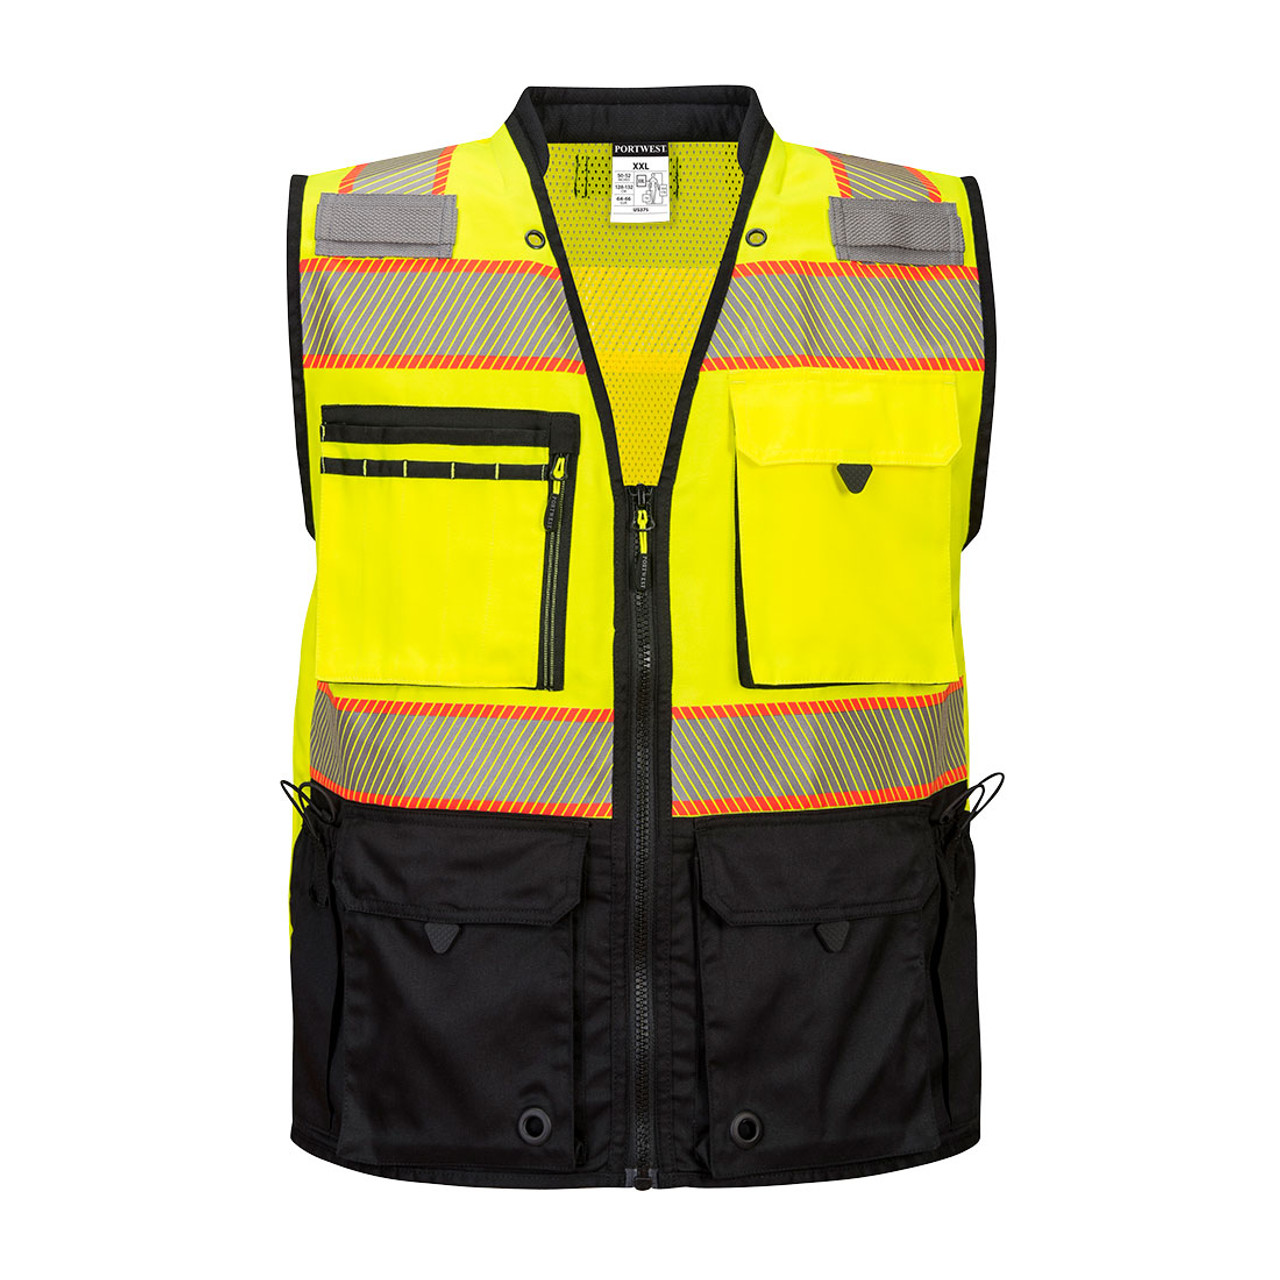 Portwest US375 Premium Surveyor Vest Yellow/Black, Large